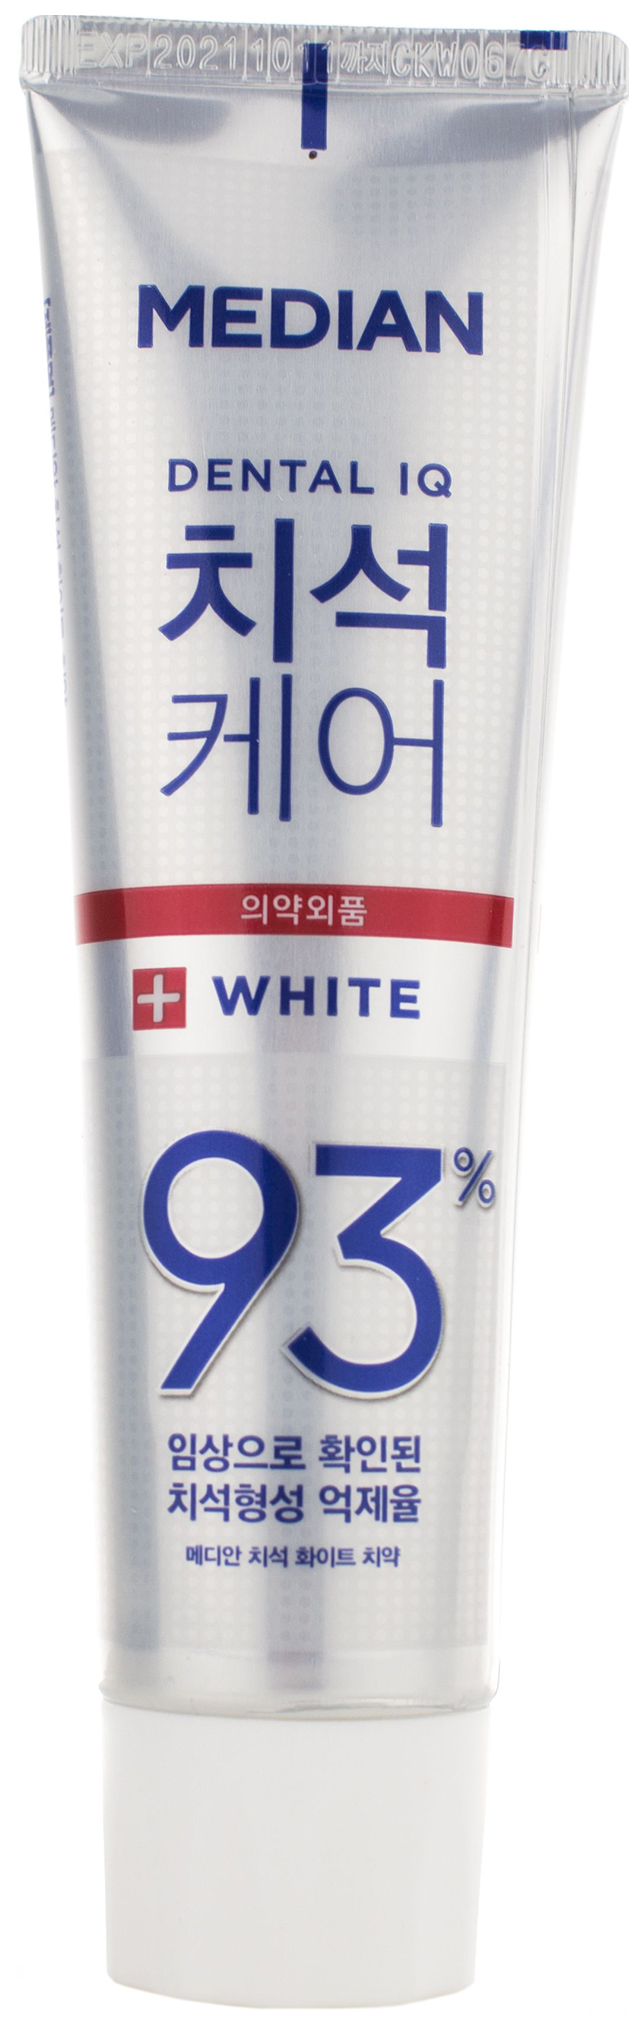 Зубная паста Median Toothpaste White 120 мл